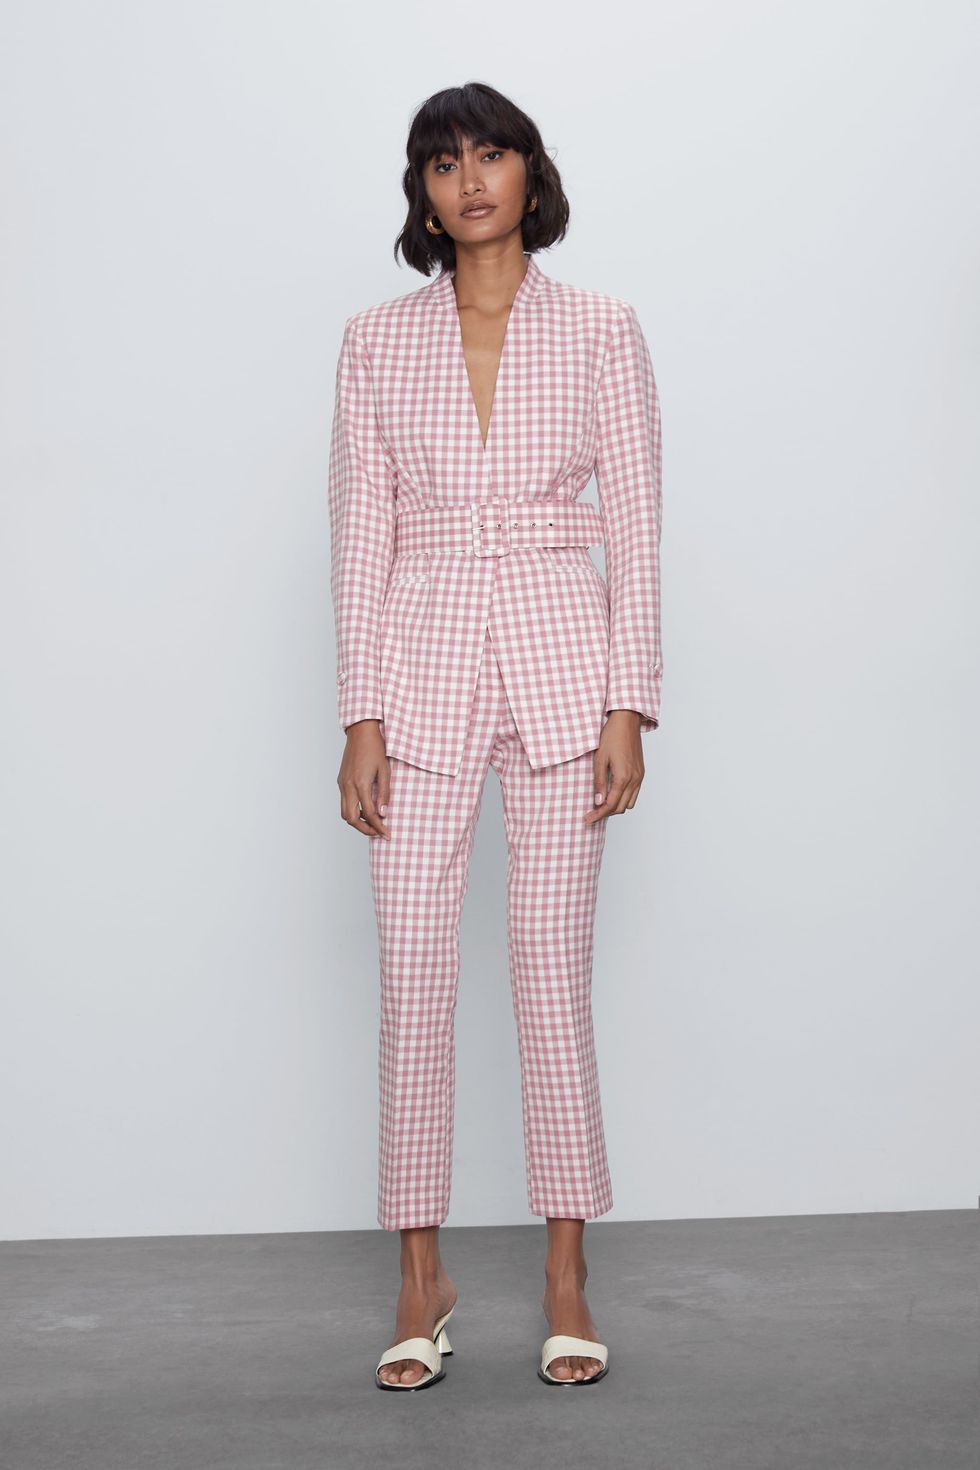 Súper favorecedor, barato y versátil: Zara nos presenta el traje de blazer  y pantalón en rosa pastel más bonito de la primavera